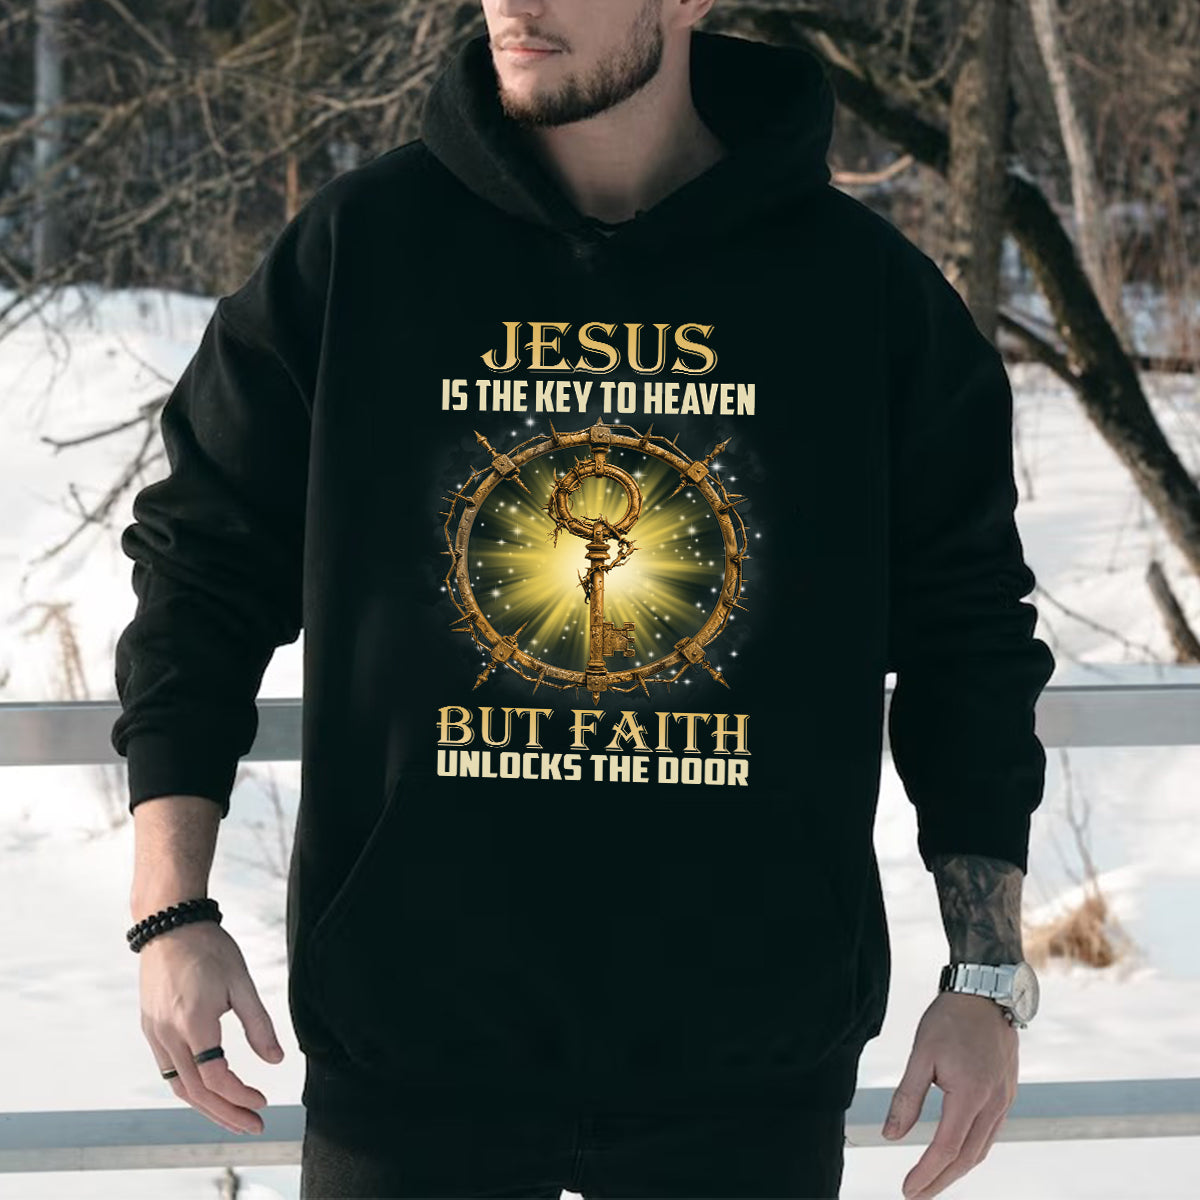 Teesdily | Jesus Christ Shirt, Jesus Is The Key To Heaven Shirt, Christian Crown Shirt, Religious Gifts Unisex Tshirt Hoodie Sweatshirt Size S-5XL / Mug 11-15Oz